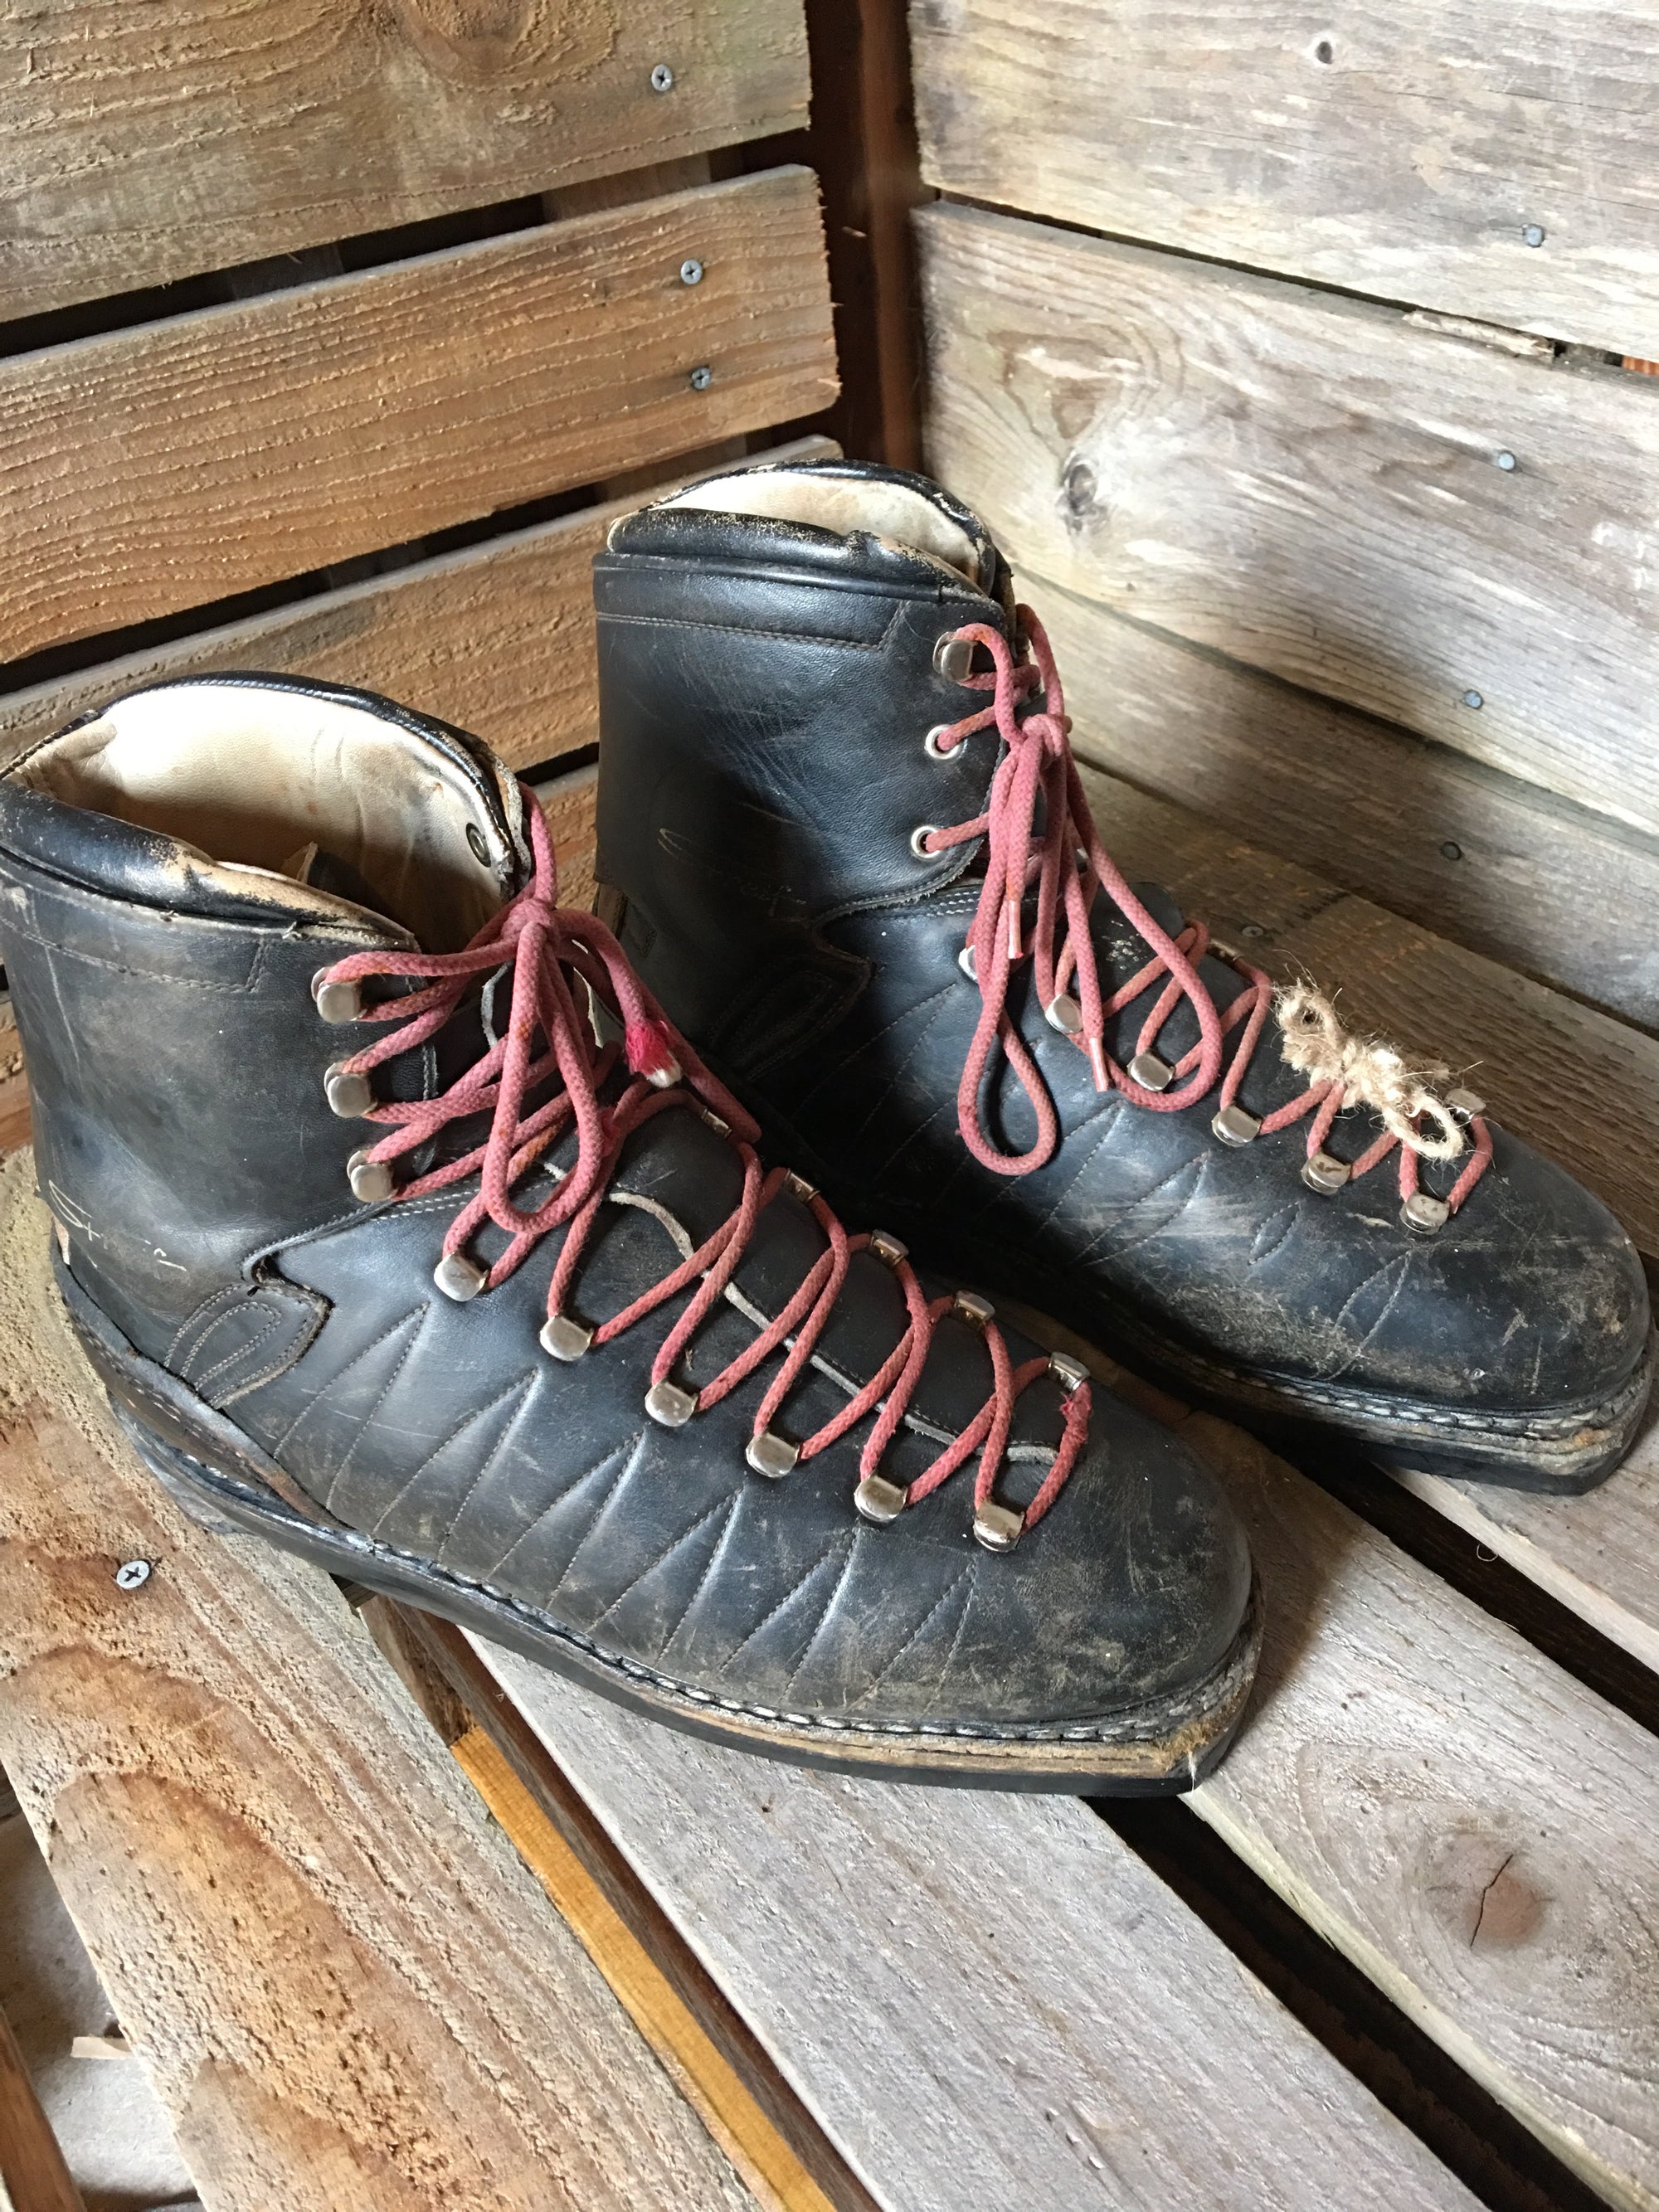 ski boot laces